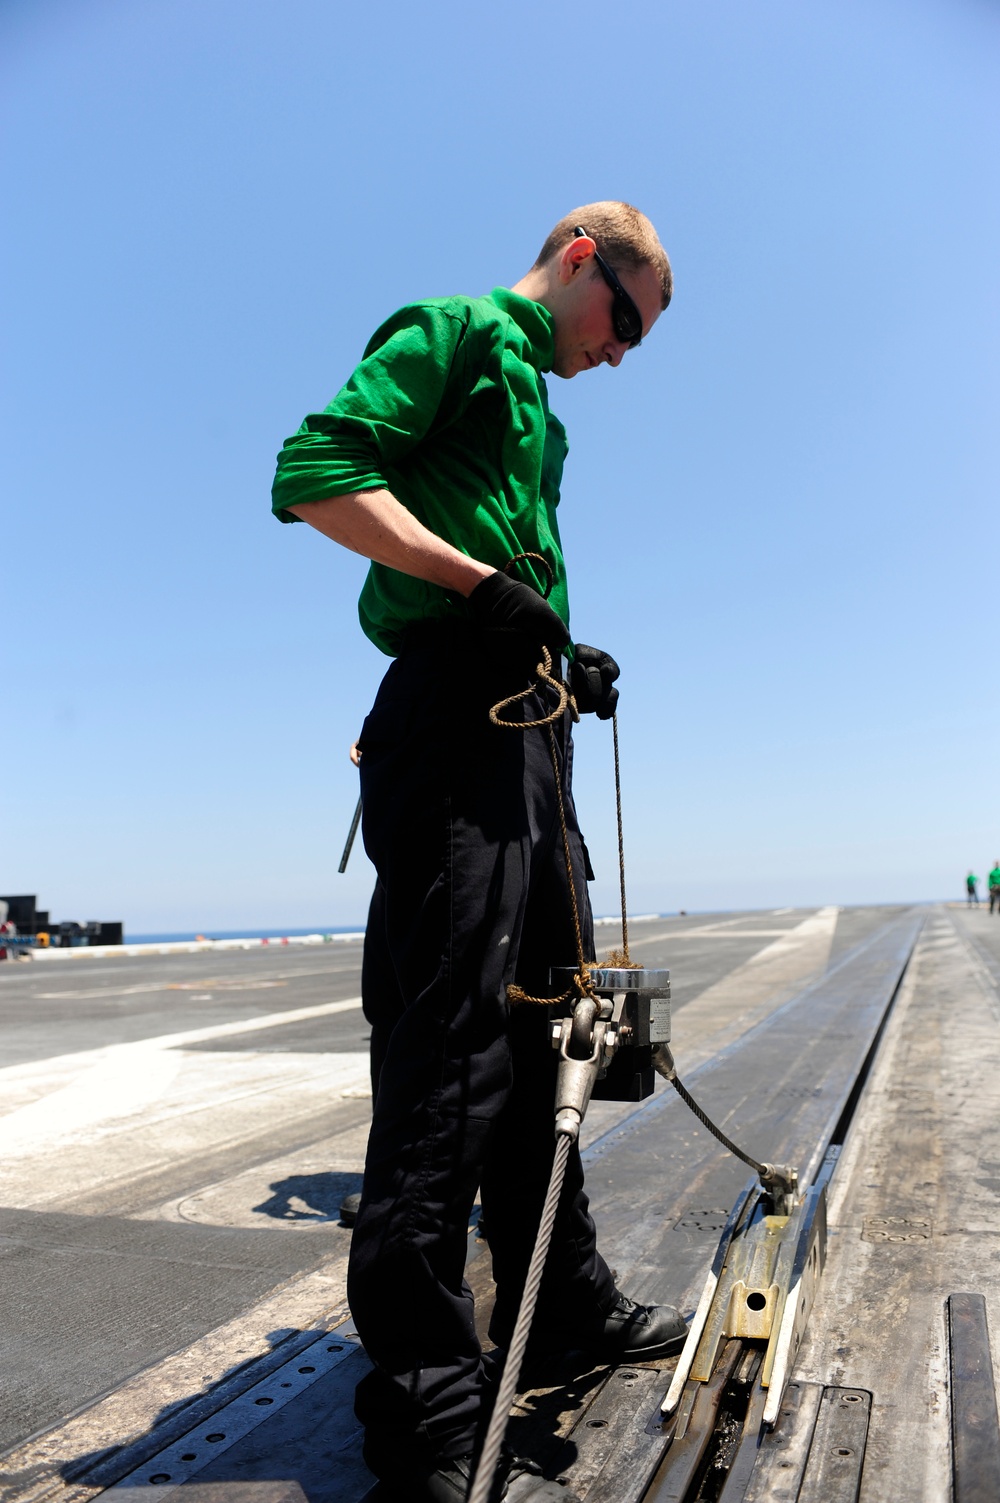 Maintenance work aboard the USS Dwight D. Eisenhower